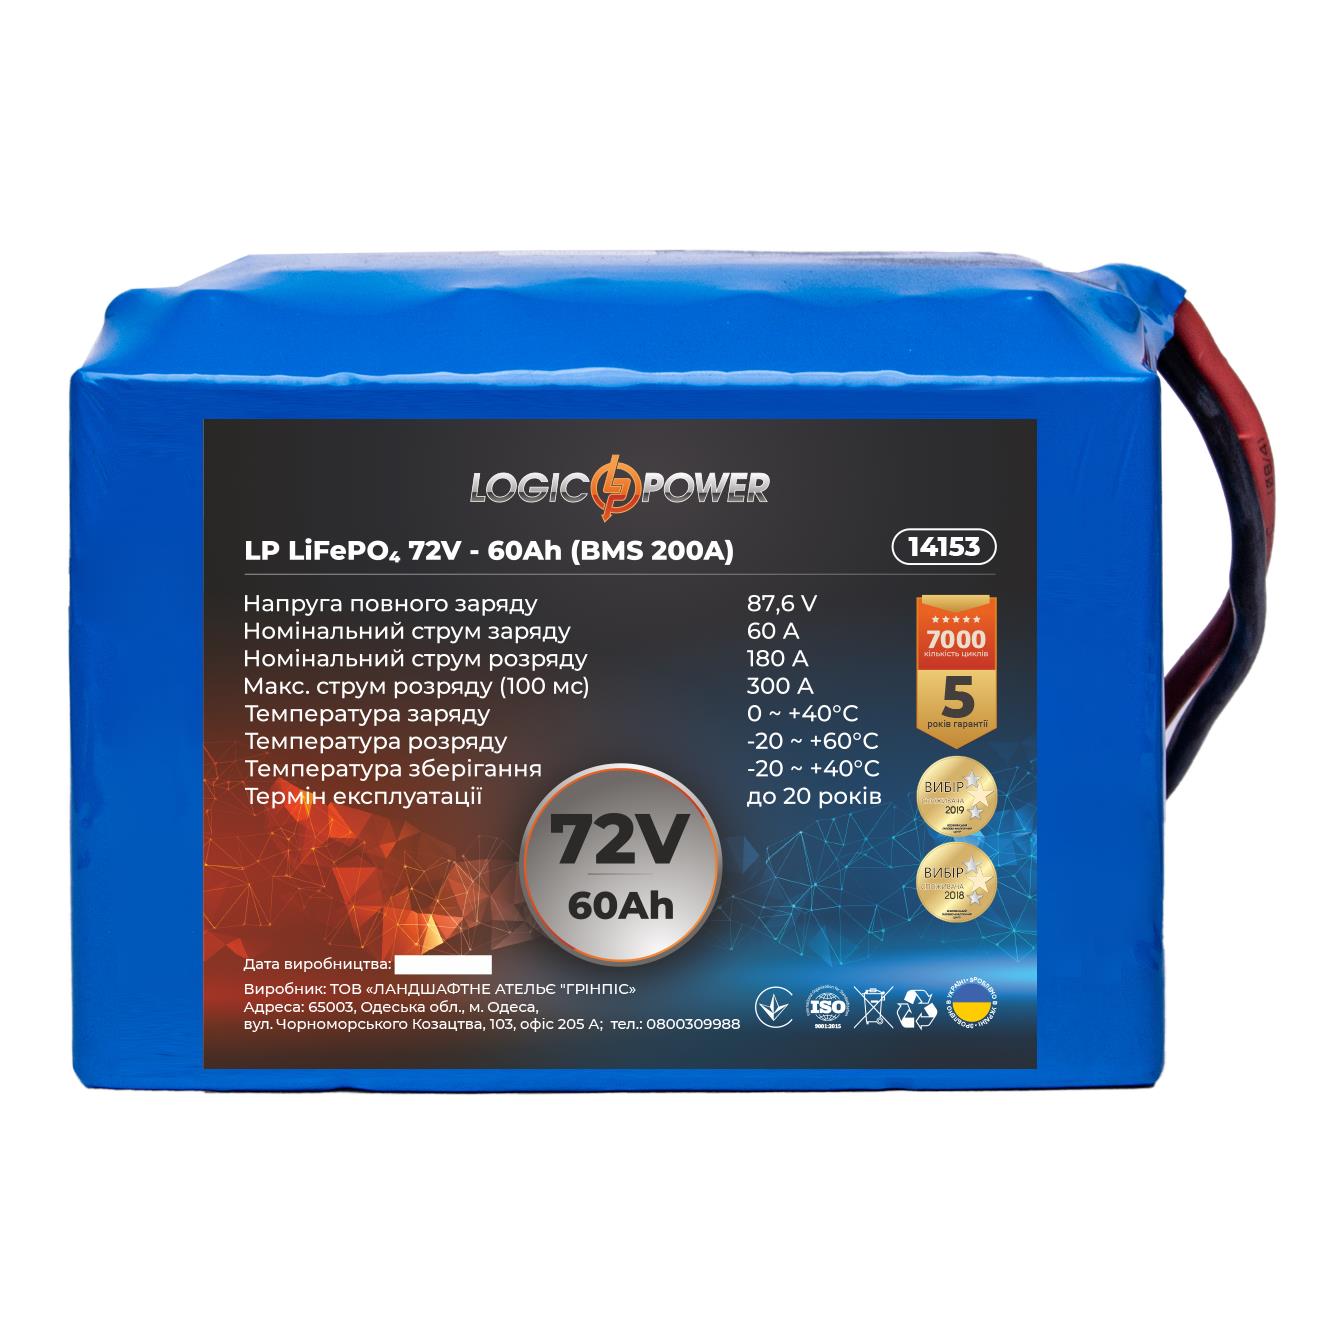 Інструкція акумулятор літій-залізо-фосфатний LogicPower LP LiFePO4 72V - 60 Ah (BMS 200A) (14153)